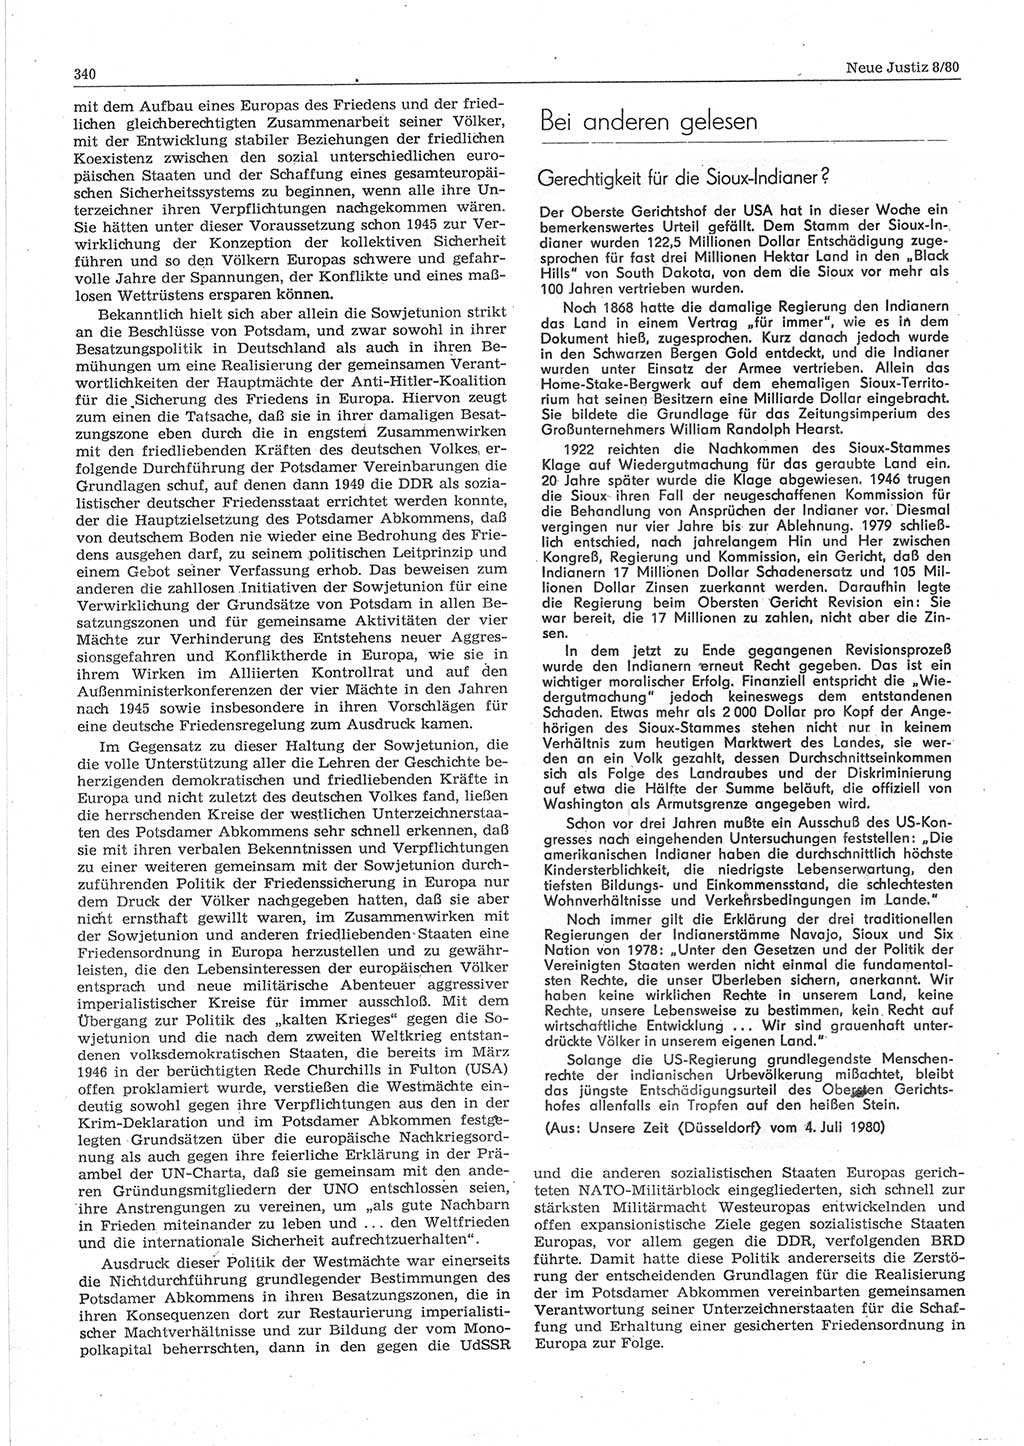 Neue Justiz (NJ), Zeitschrift für sozialistisches Recht und Gesetzlichkeit [Deutsche Demokratische Republik (DDR)], 34. Jahrgang 1980, Seite 340 (NJ DDR 1980, S. 340)